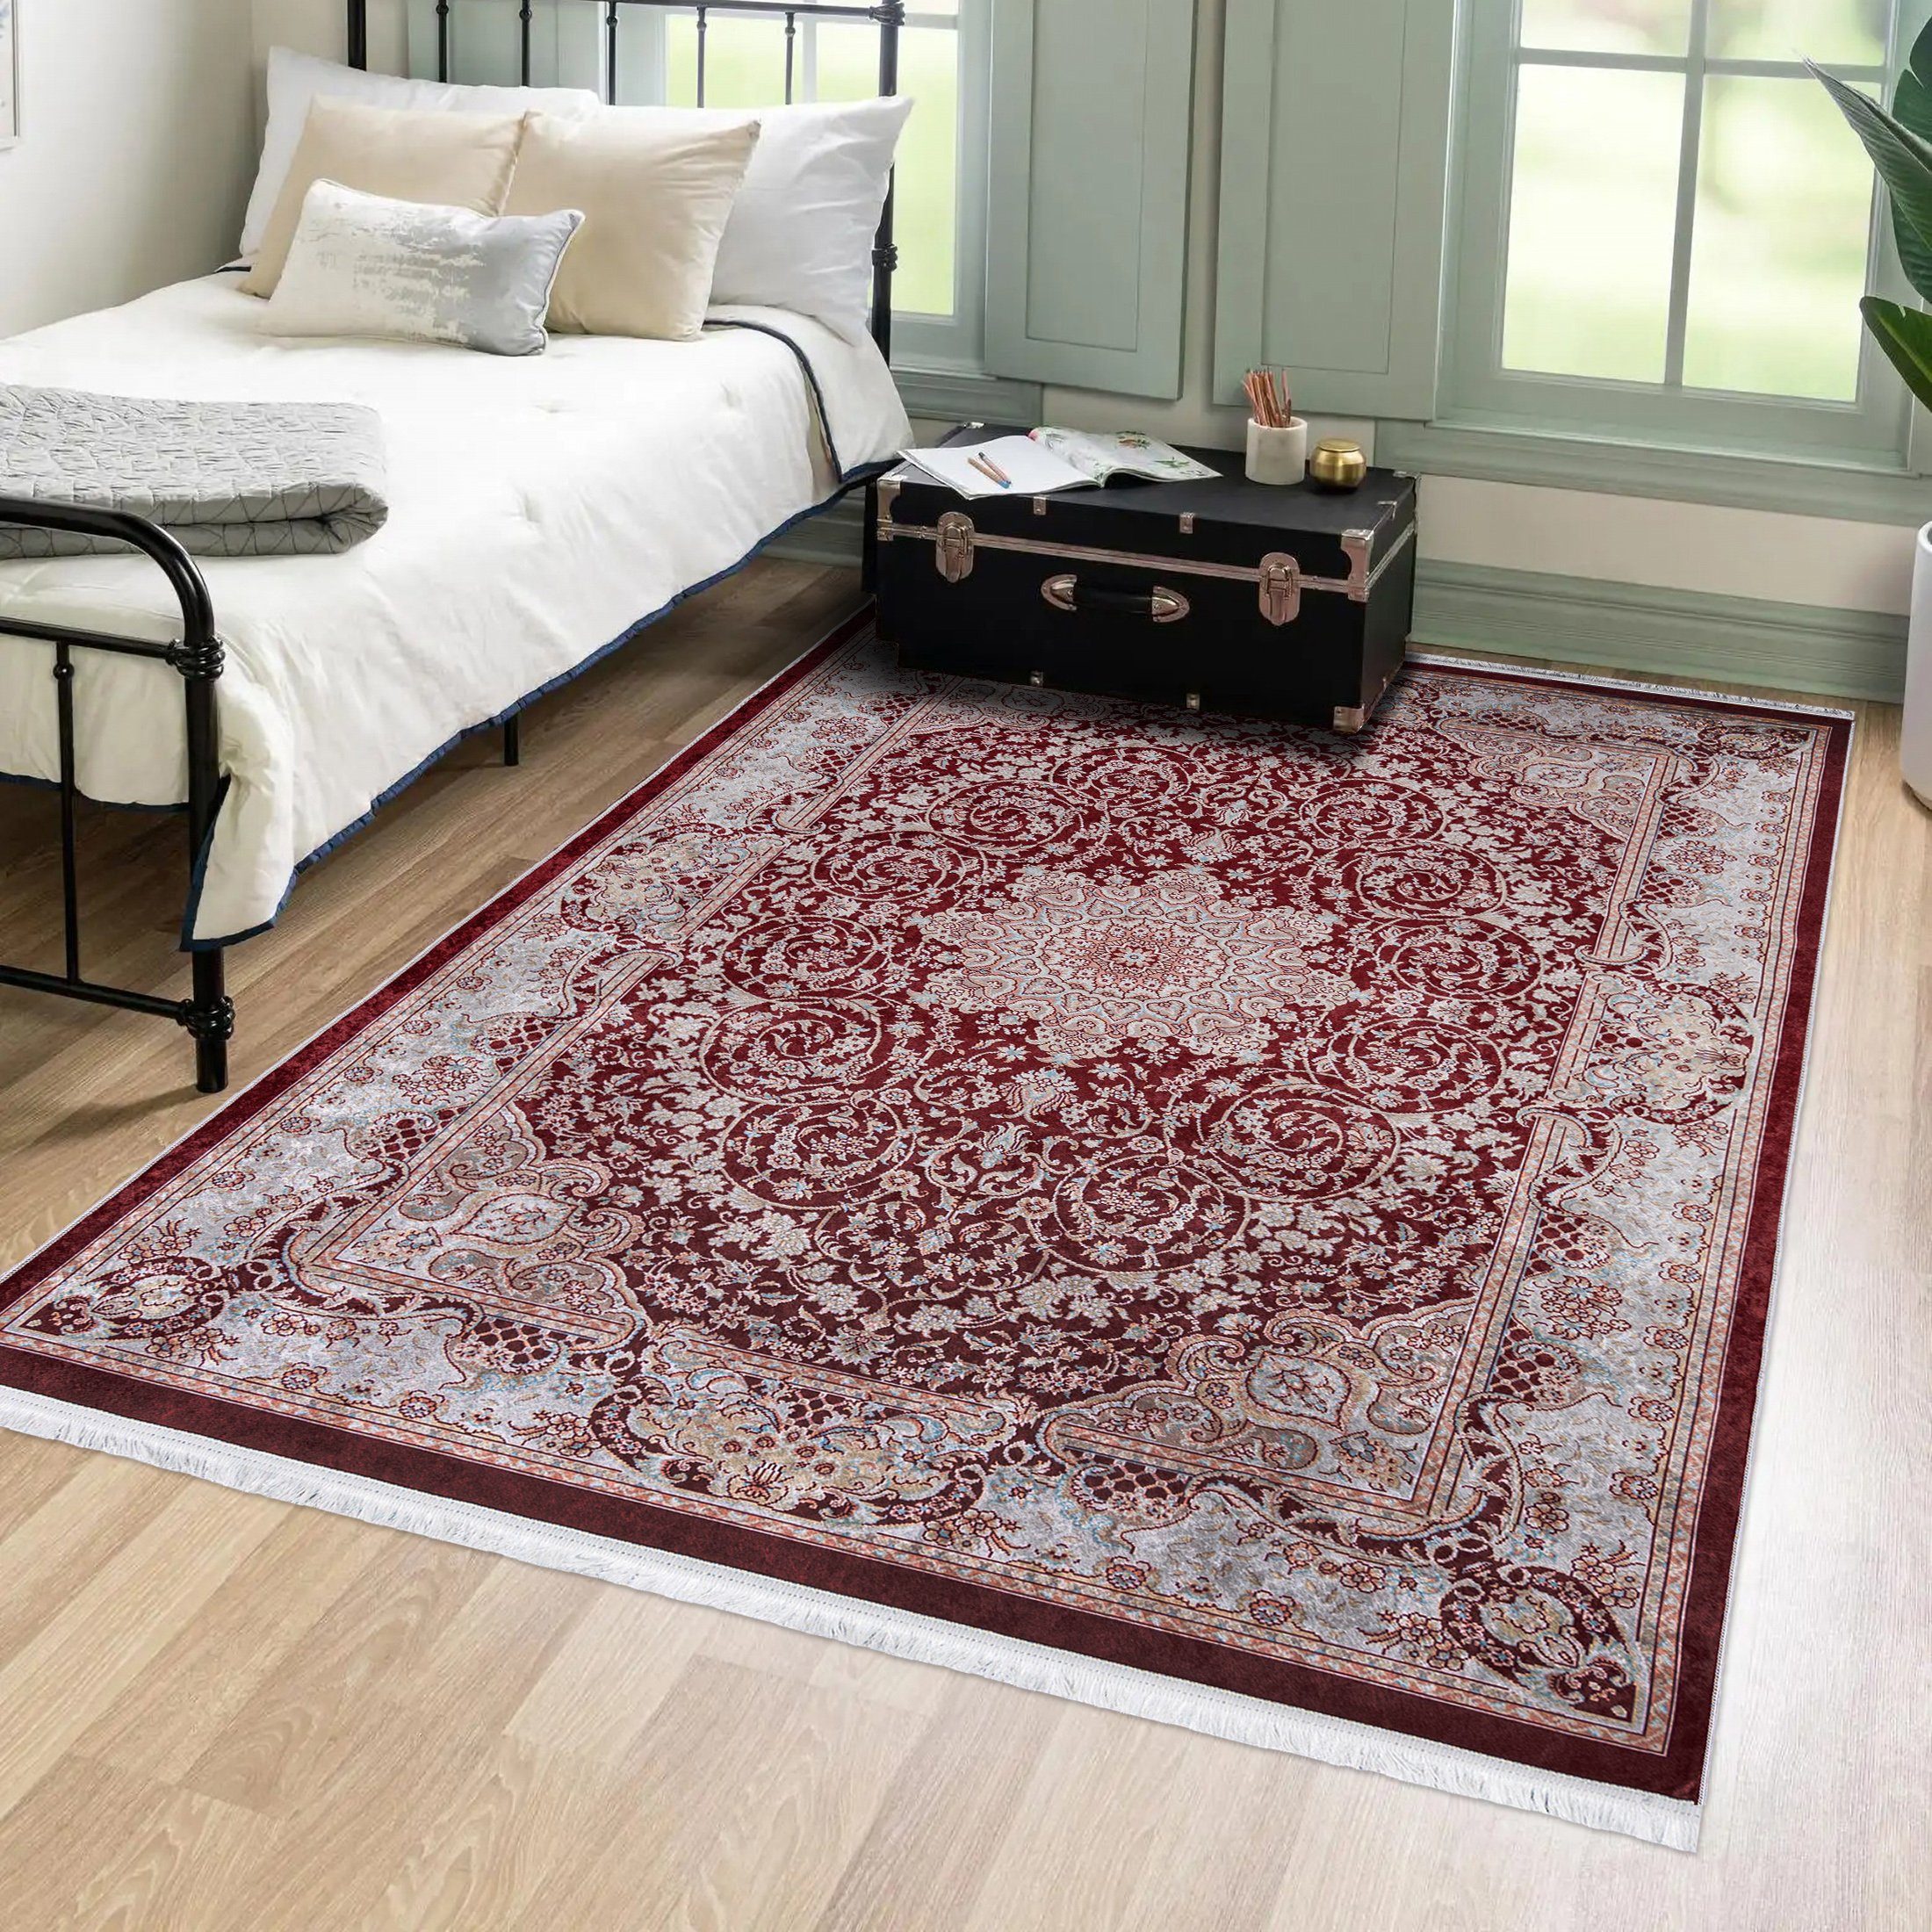 Orientteppich Orientalisch Vintage Teppich Traditioneller Orient Teppich, Mazovia, 80 x 150 cm, Kurflor, Waschbar in Waschmaschine, Höhe 5 mm, Rutschfest Rot / 42510 | Alle Teppiche